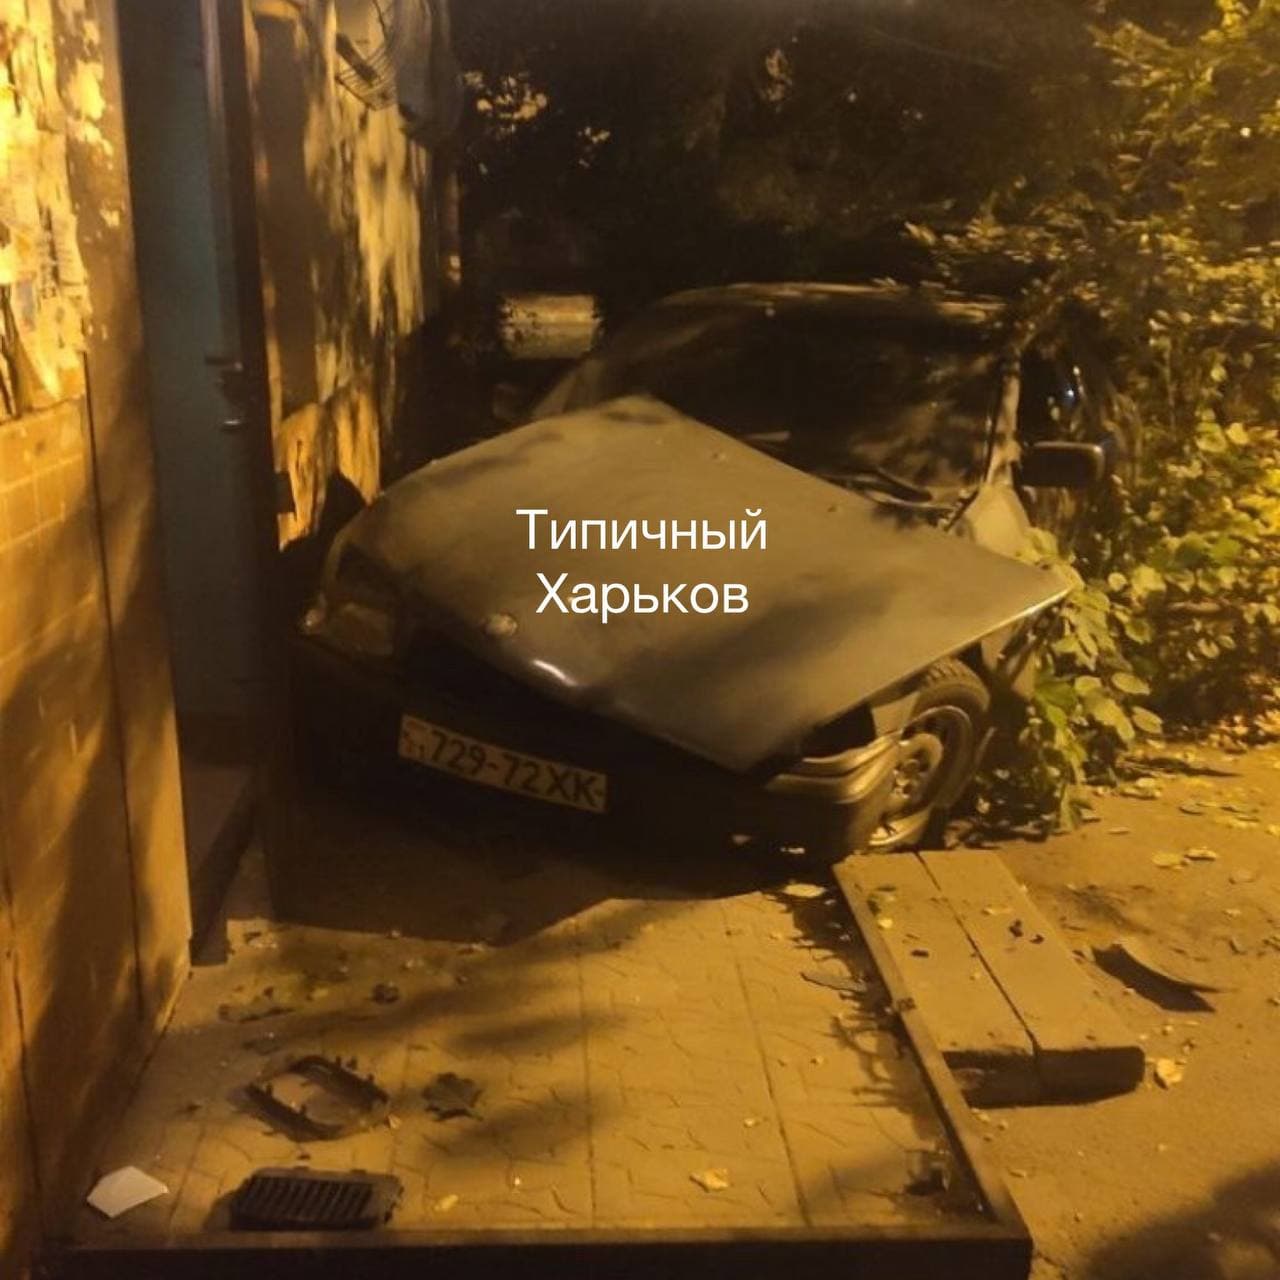 В Харькове пьяный водитель на BMW протаранил подъезд многоэтажки, оставил там авто и скрылся.